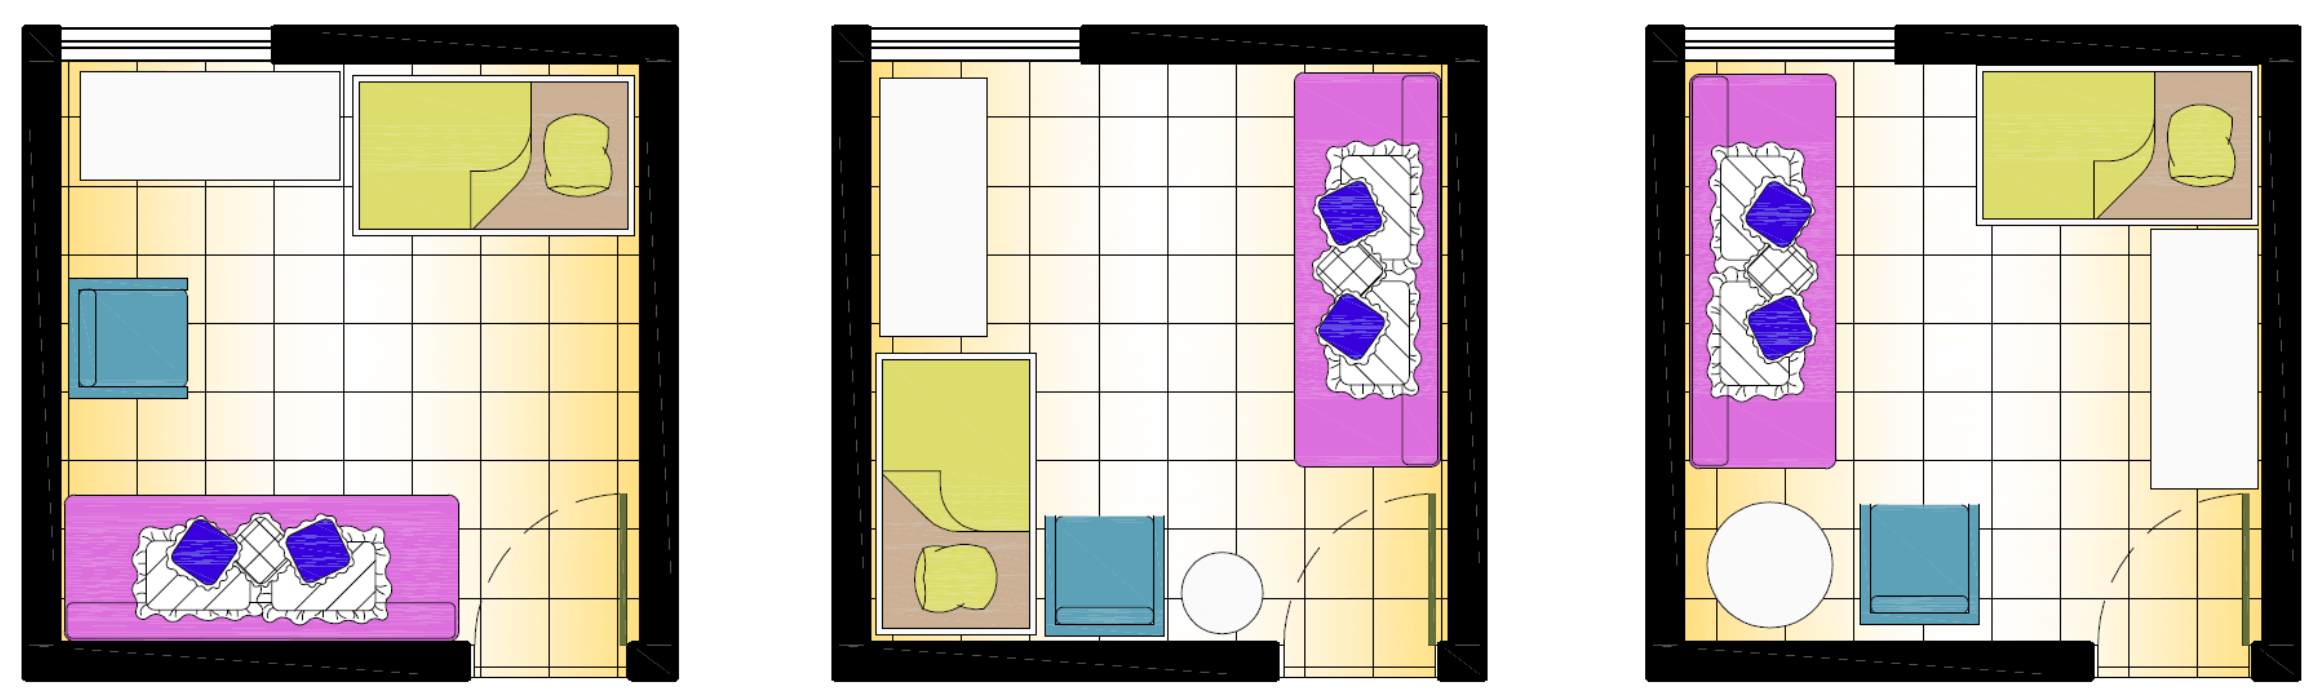 layout 3